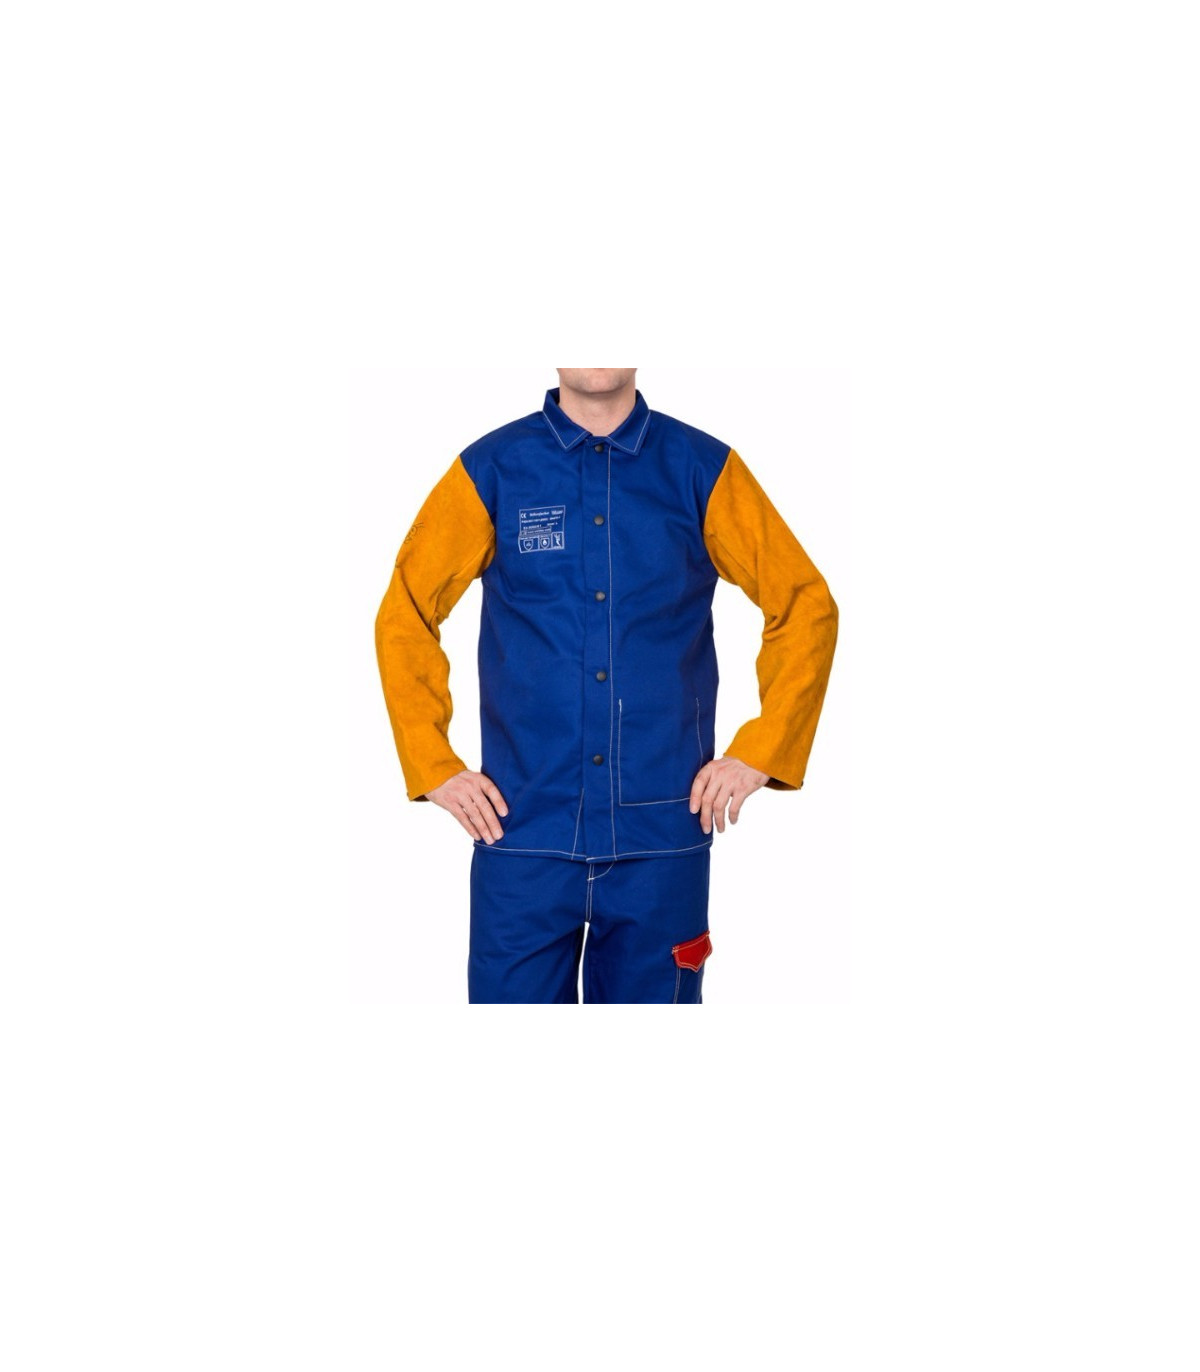 Chaqueta para azul con mangas en WELDAS Yellowjacket, comprar online